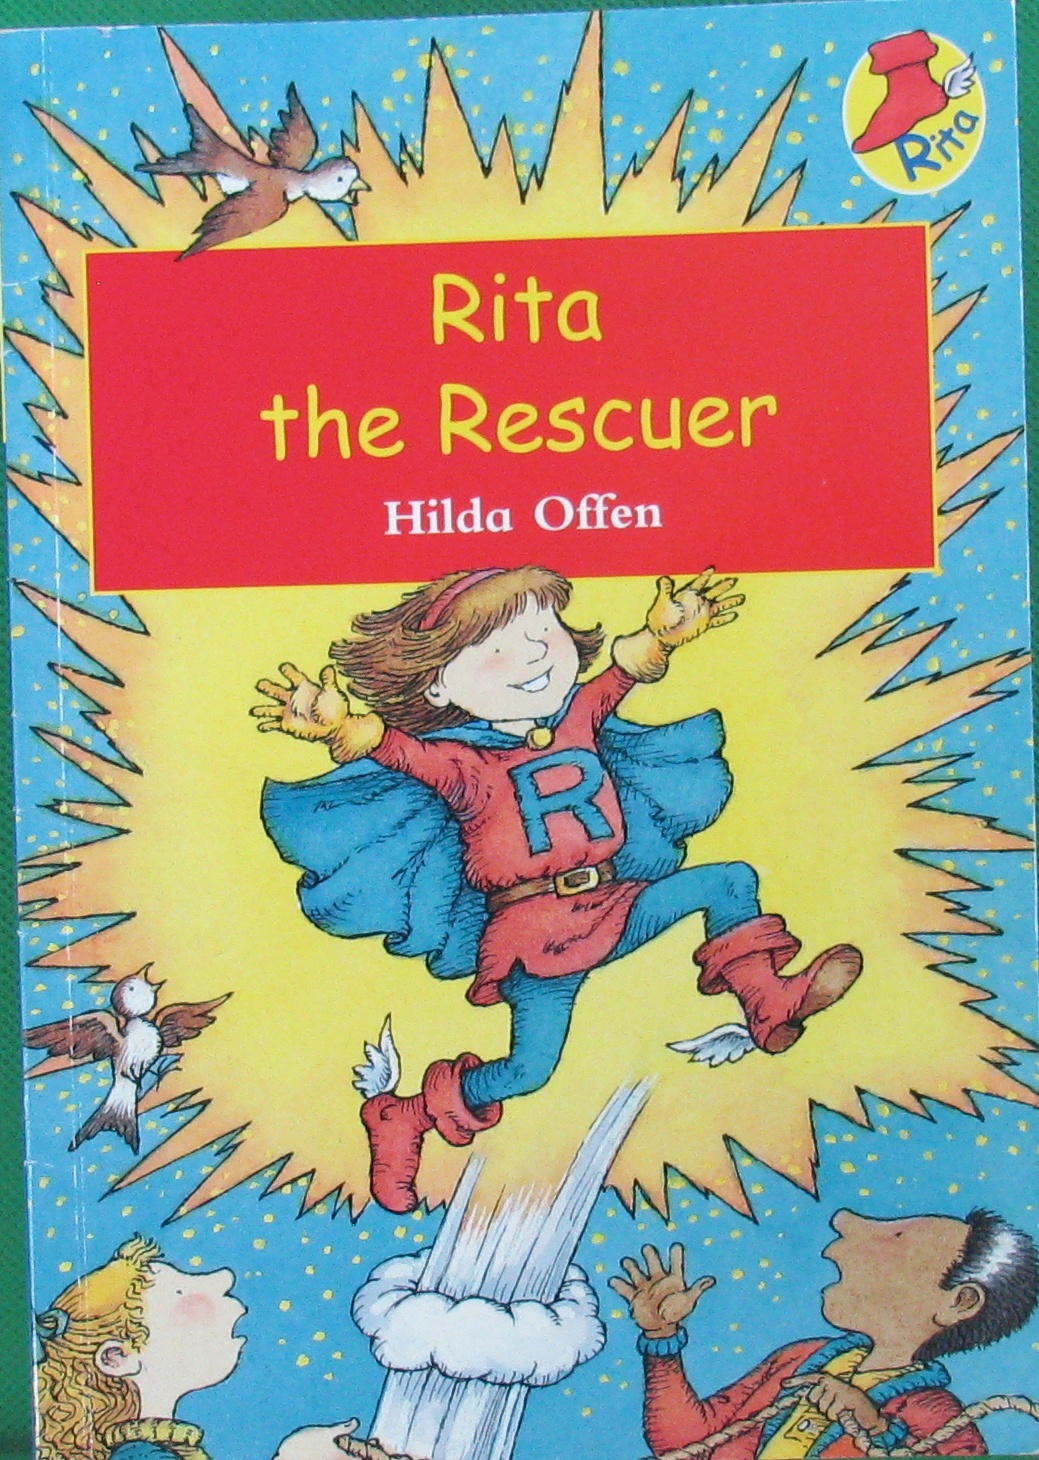 Rita the Rescuer by Hilda Offen